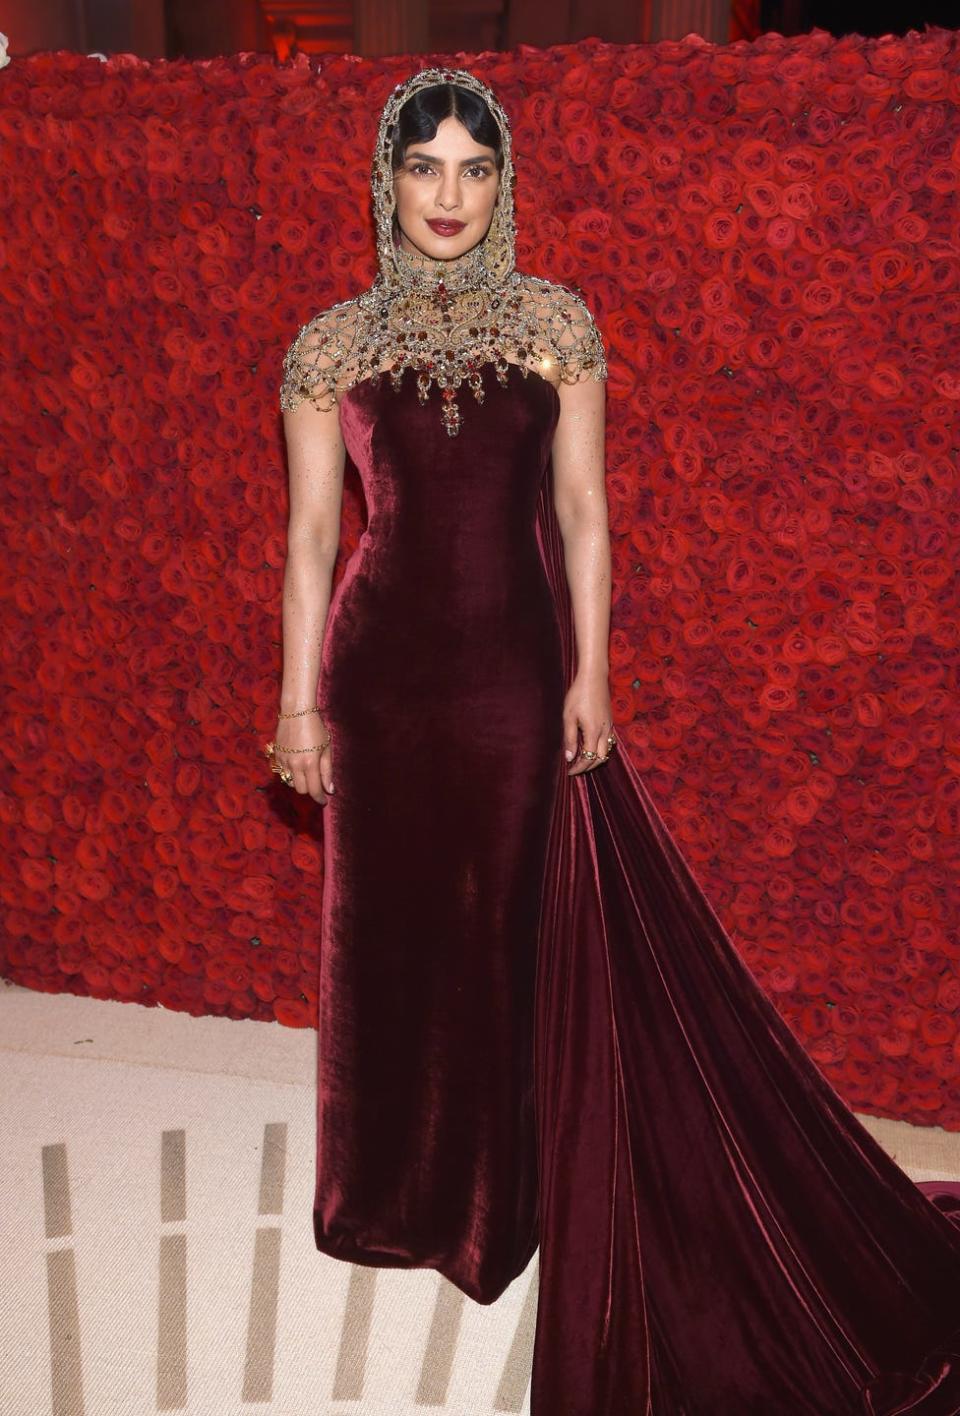 Priyanka Chopra at the Met Gala, 2018